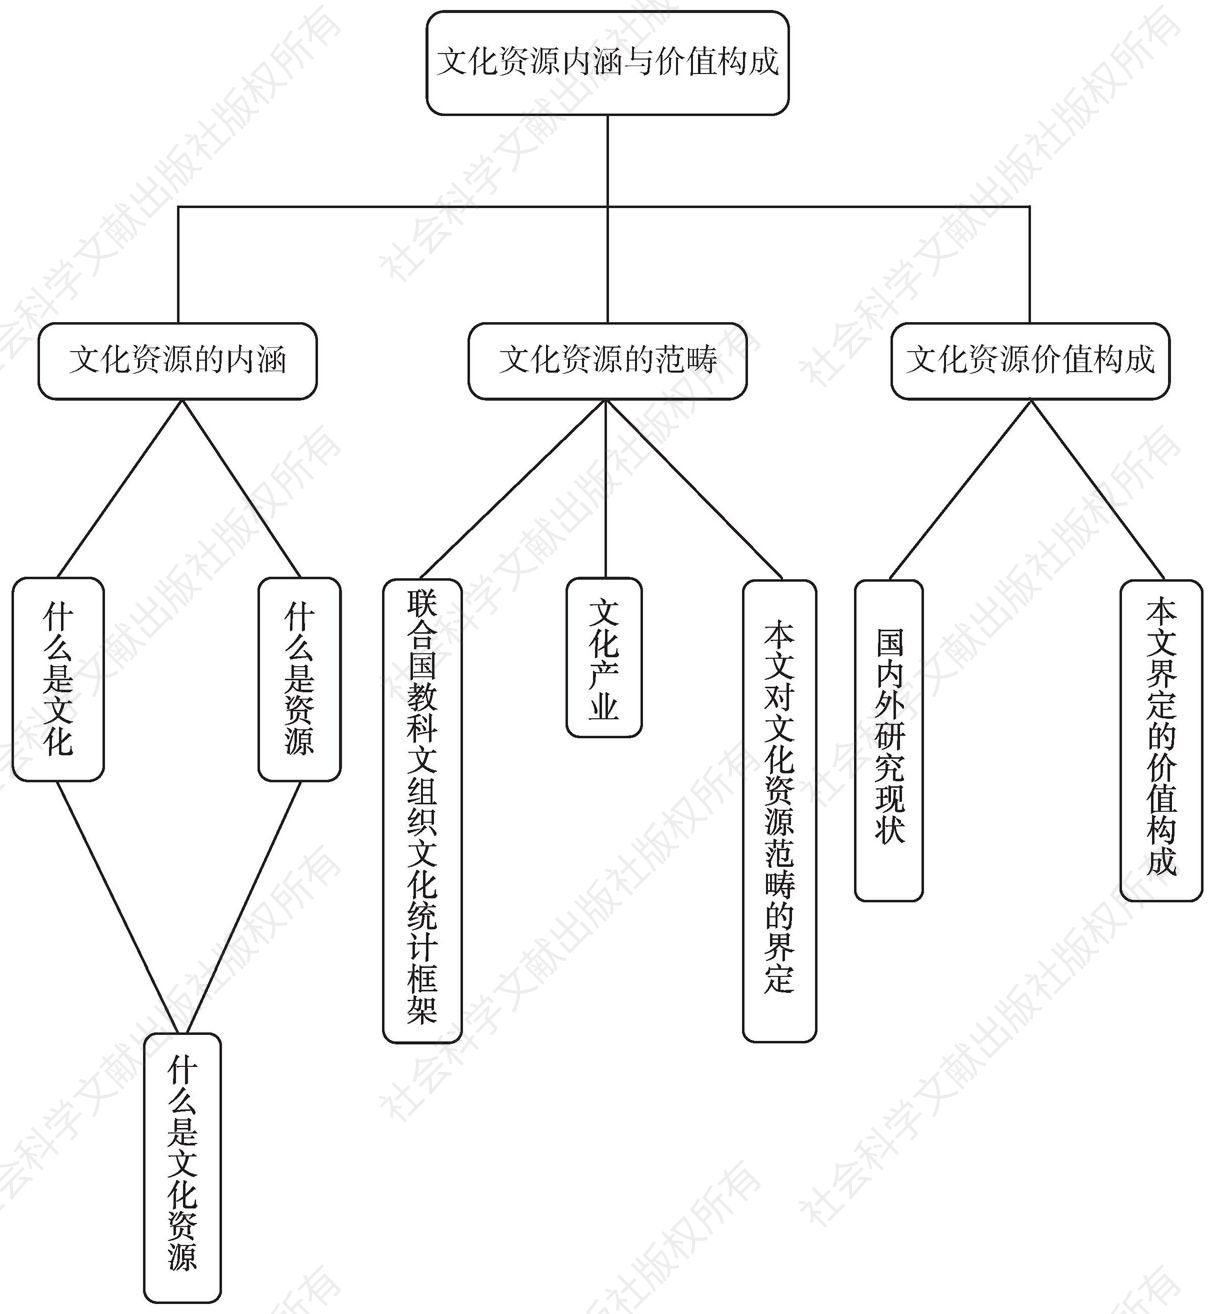 图5 本节结构